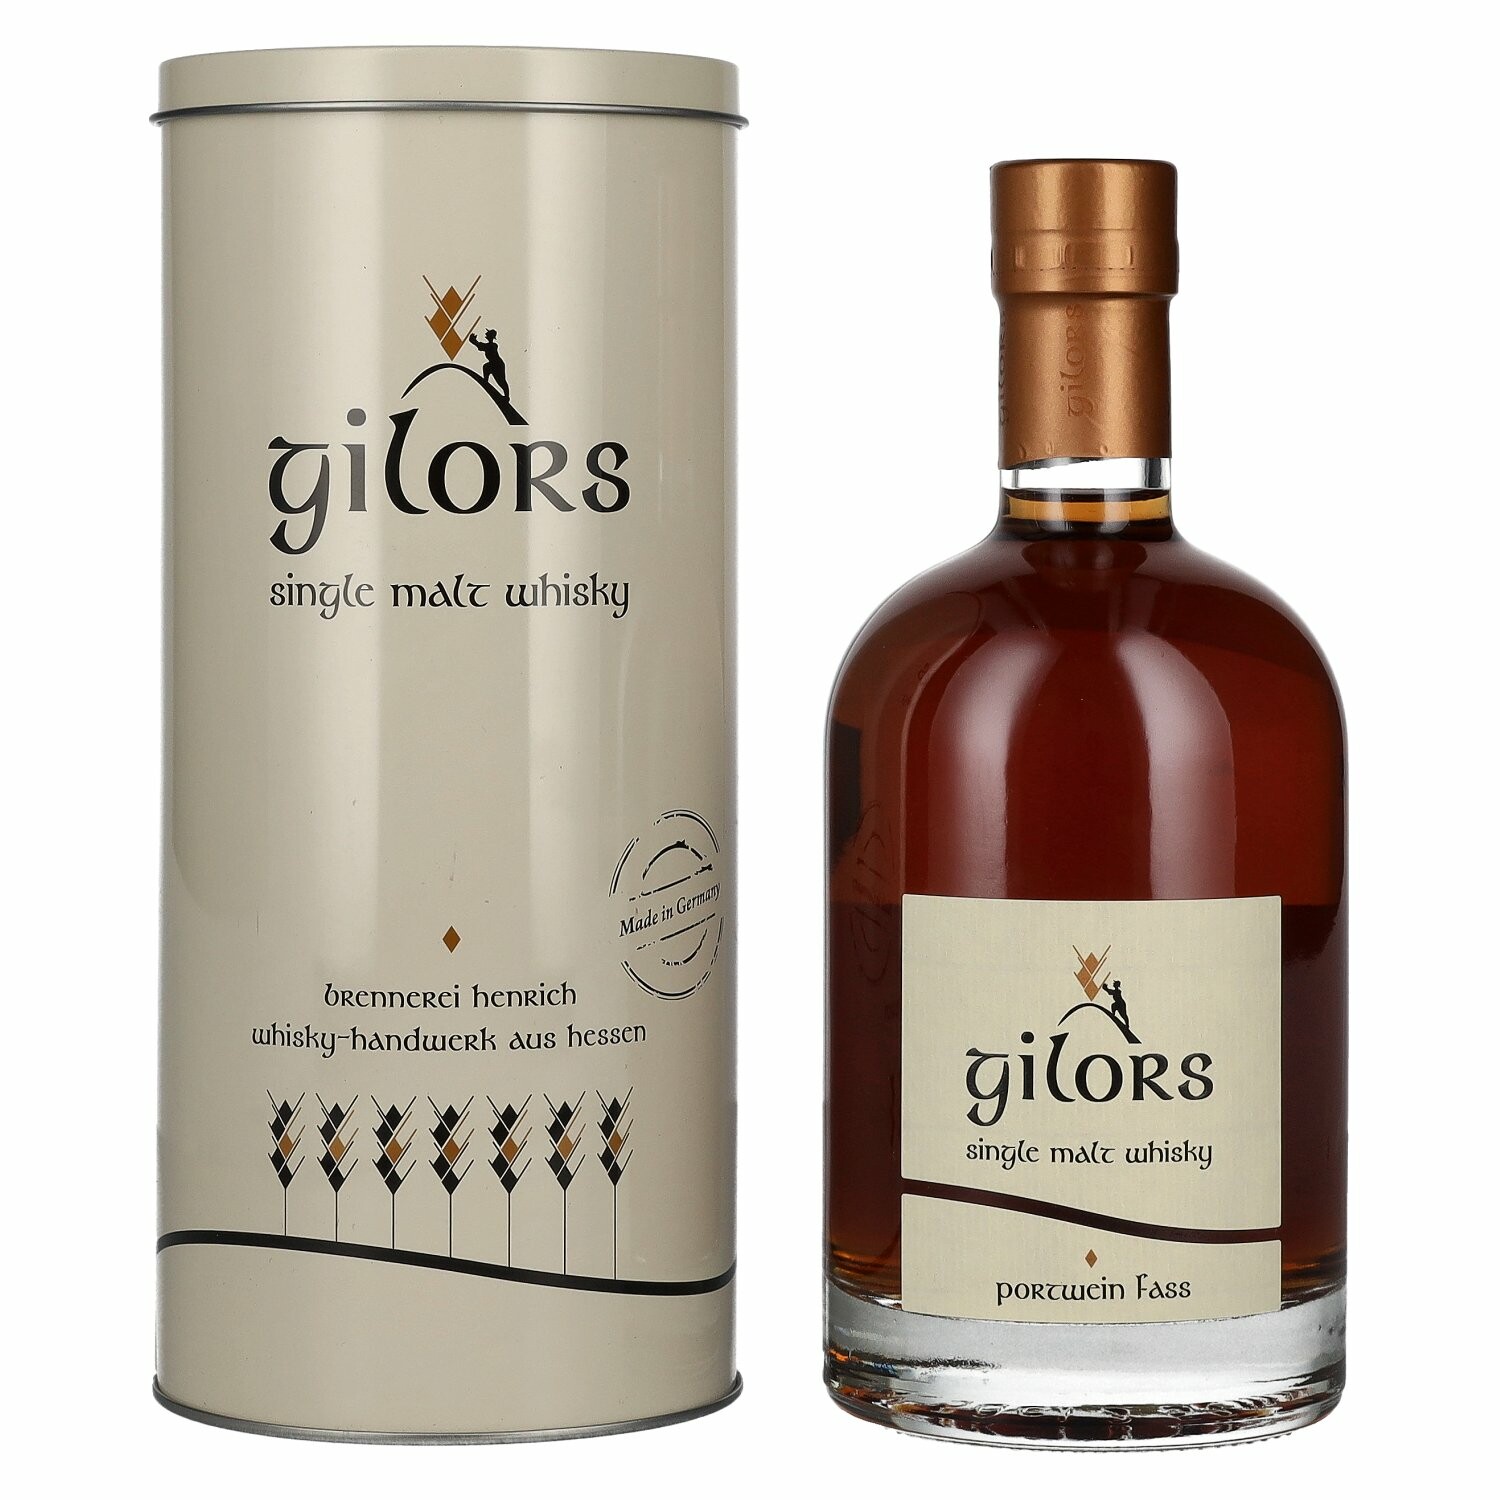 Gilors Portwein Fass Single Malt Whisky 43% Vol. 0,5l in Tinbox